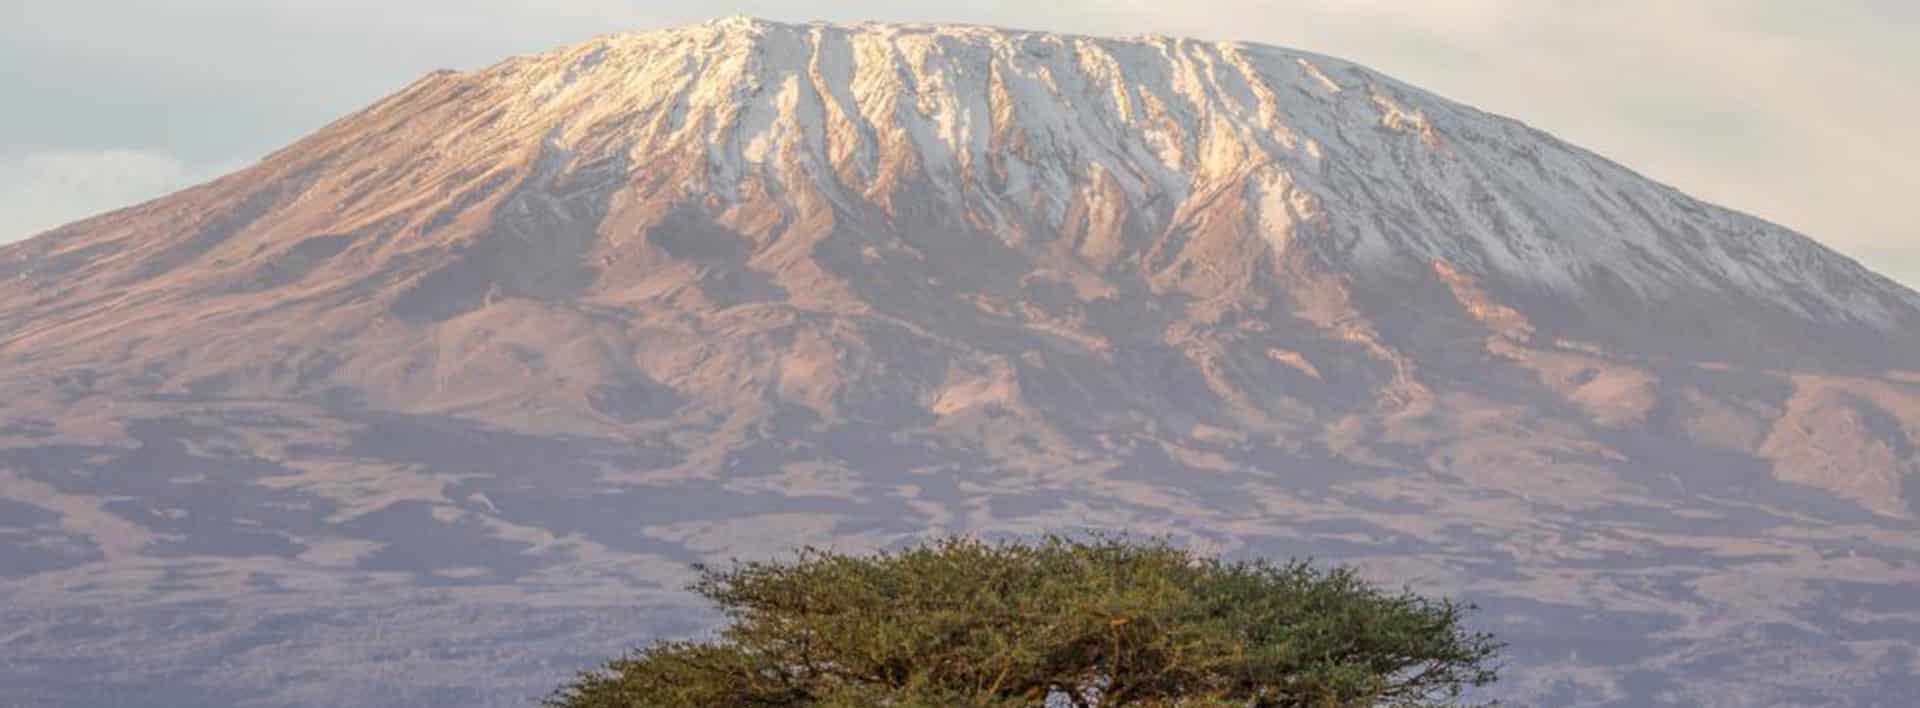 Kilimanjaro Trek: Marangu Route